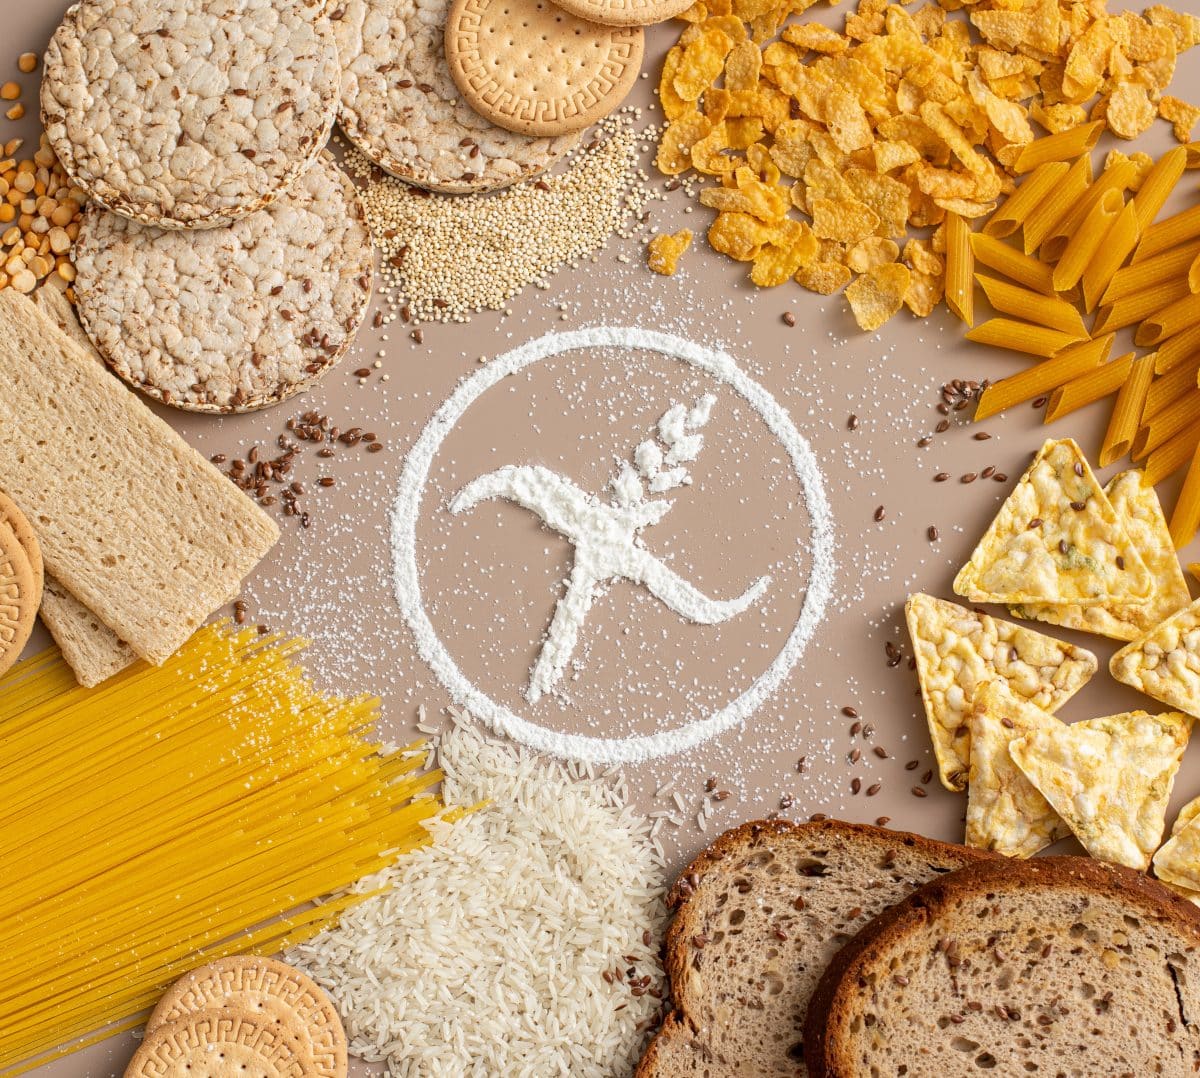 Produits avec et sans gluten : quelles différences nutritionnelles ? - Cerin